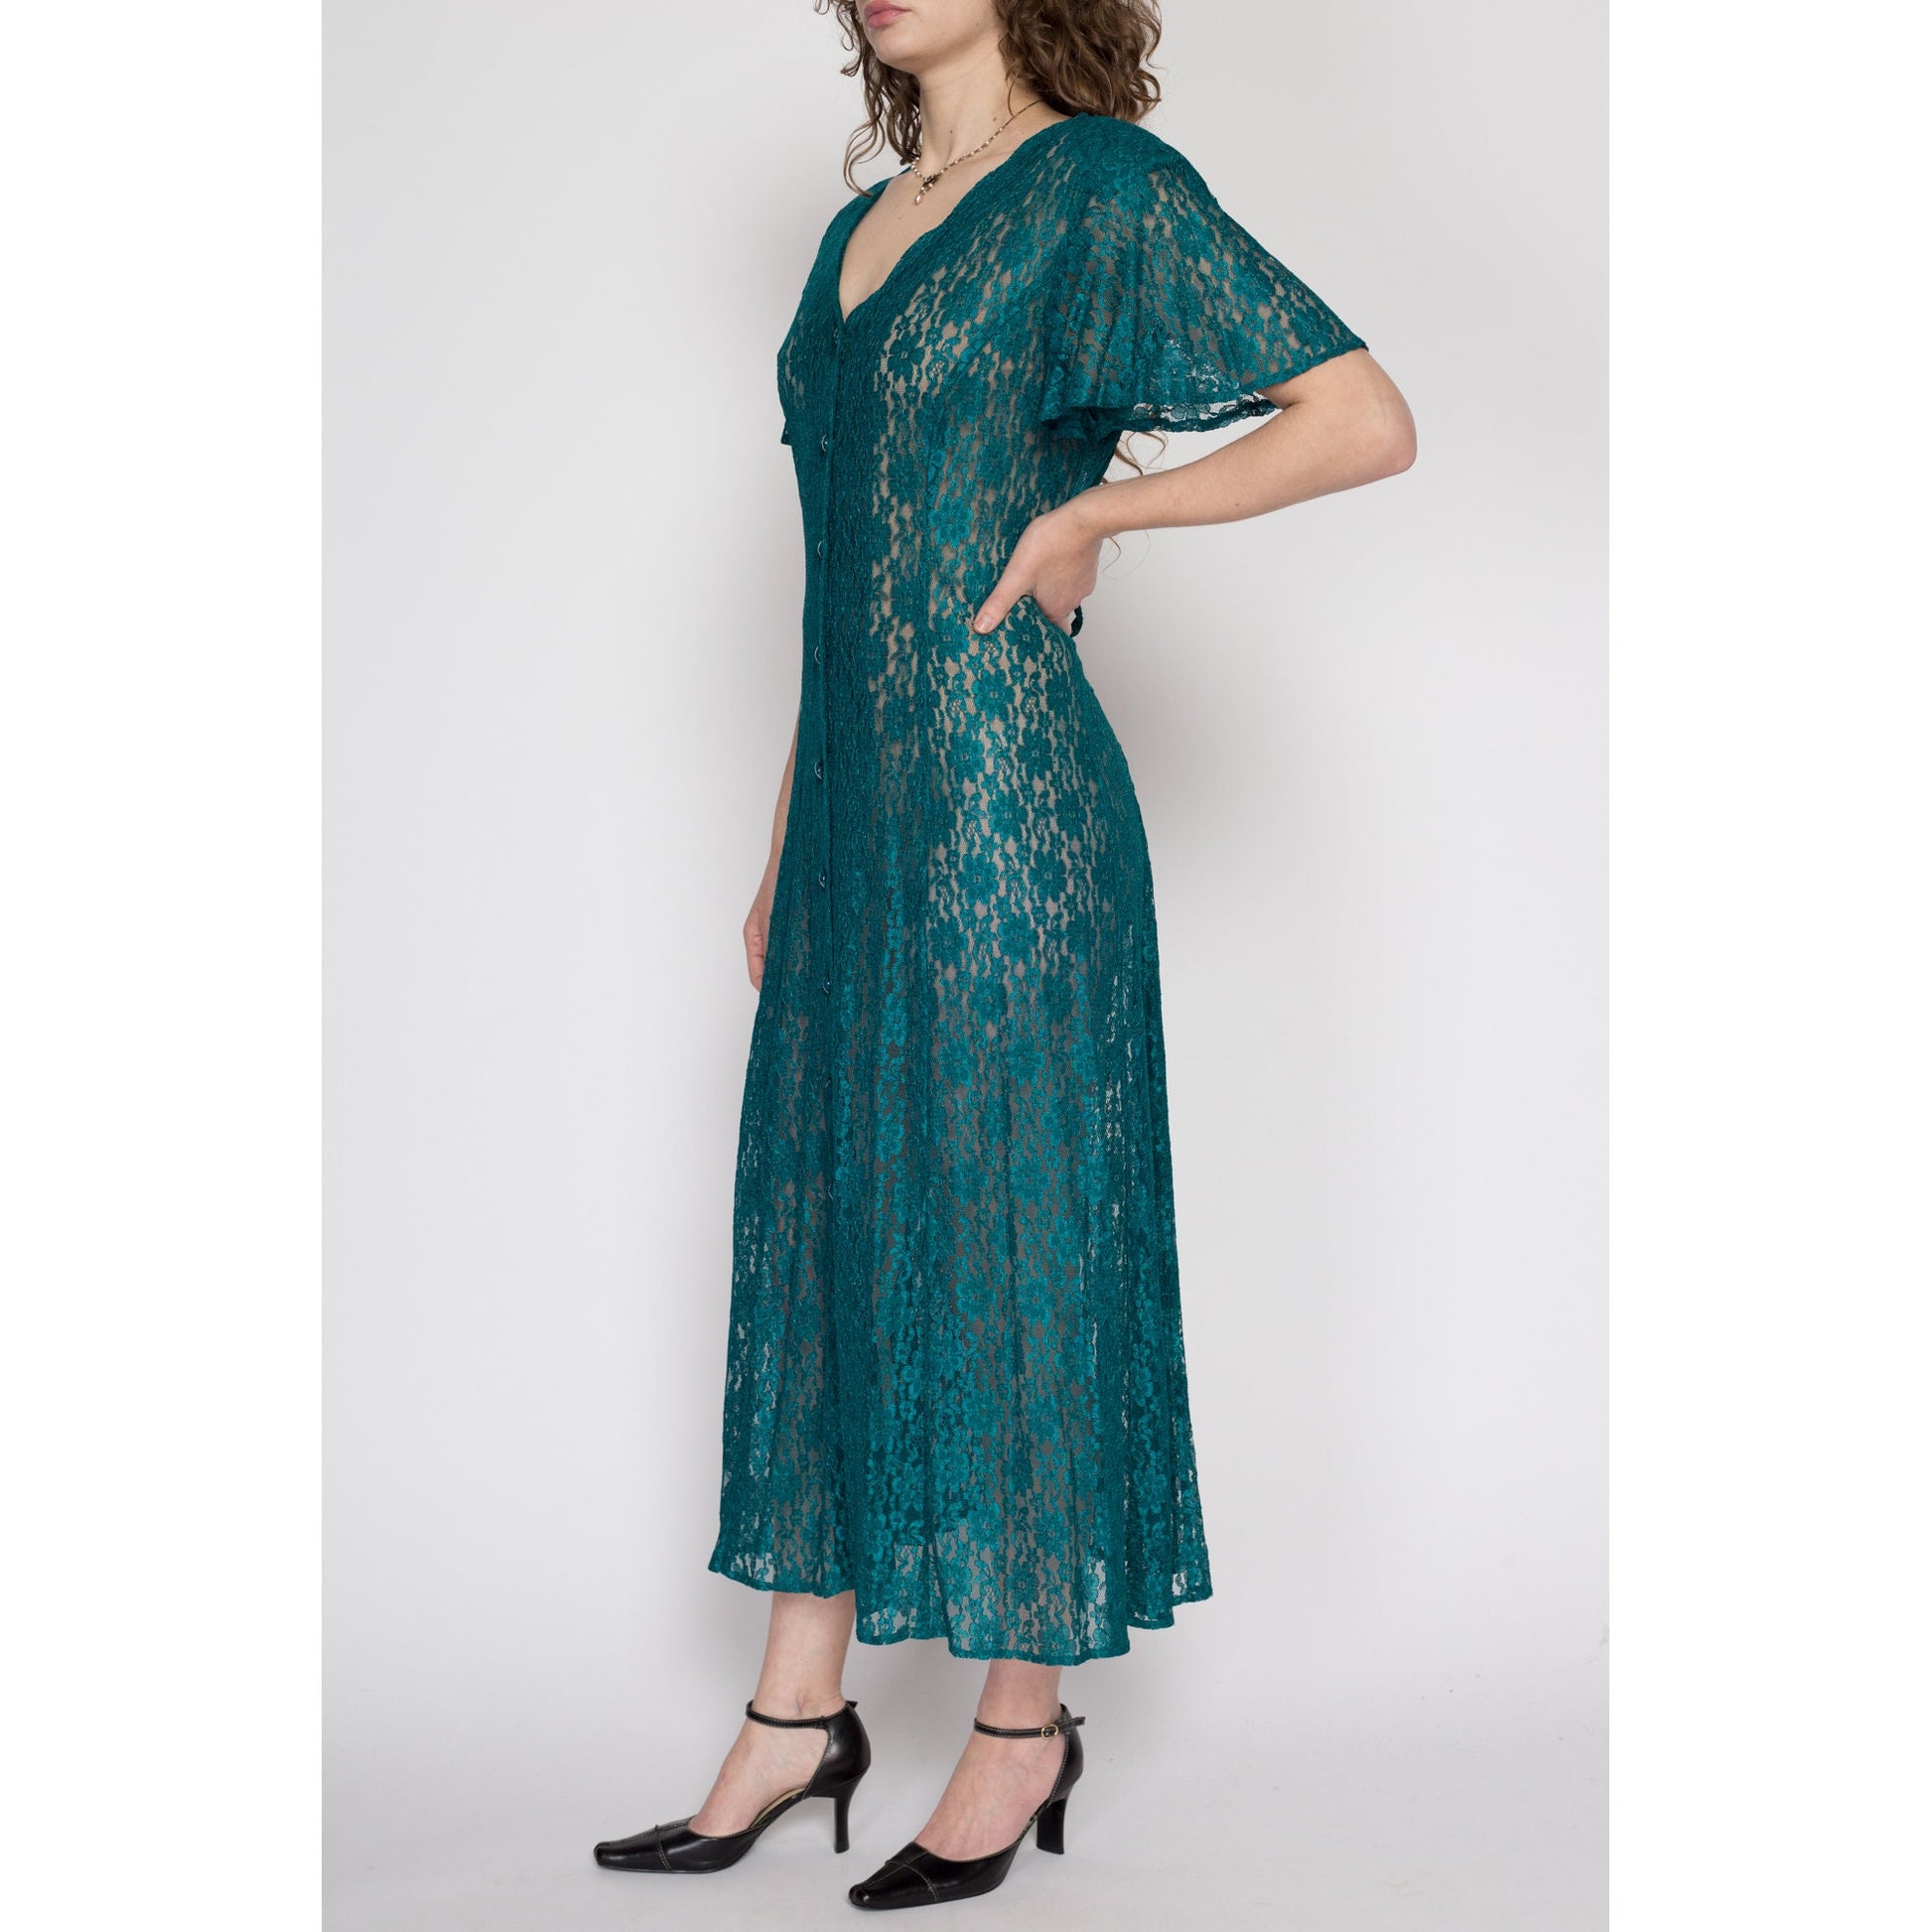 Medium 90s Emerald Green Sheer Lace Maxi Dress | Vintage Flutter Sleeve Button Up Boho Grunge Sundress